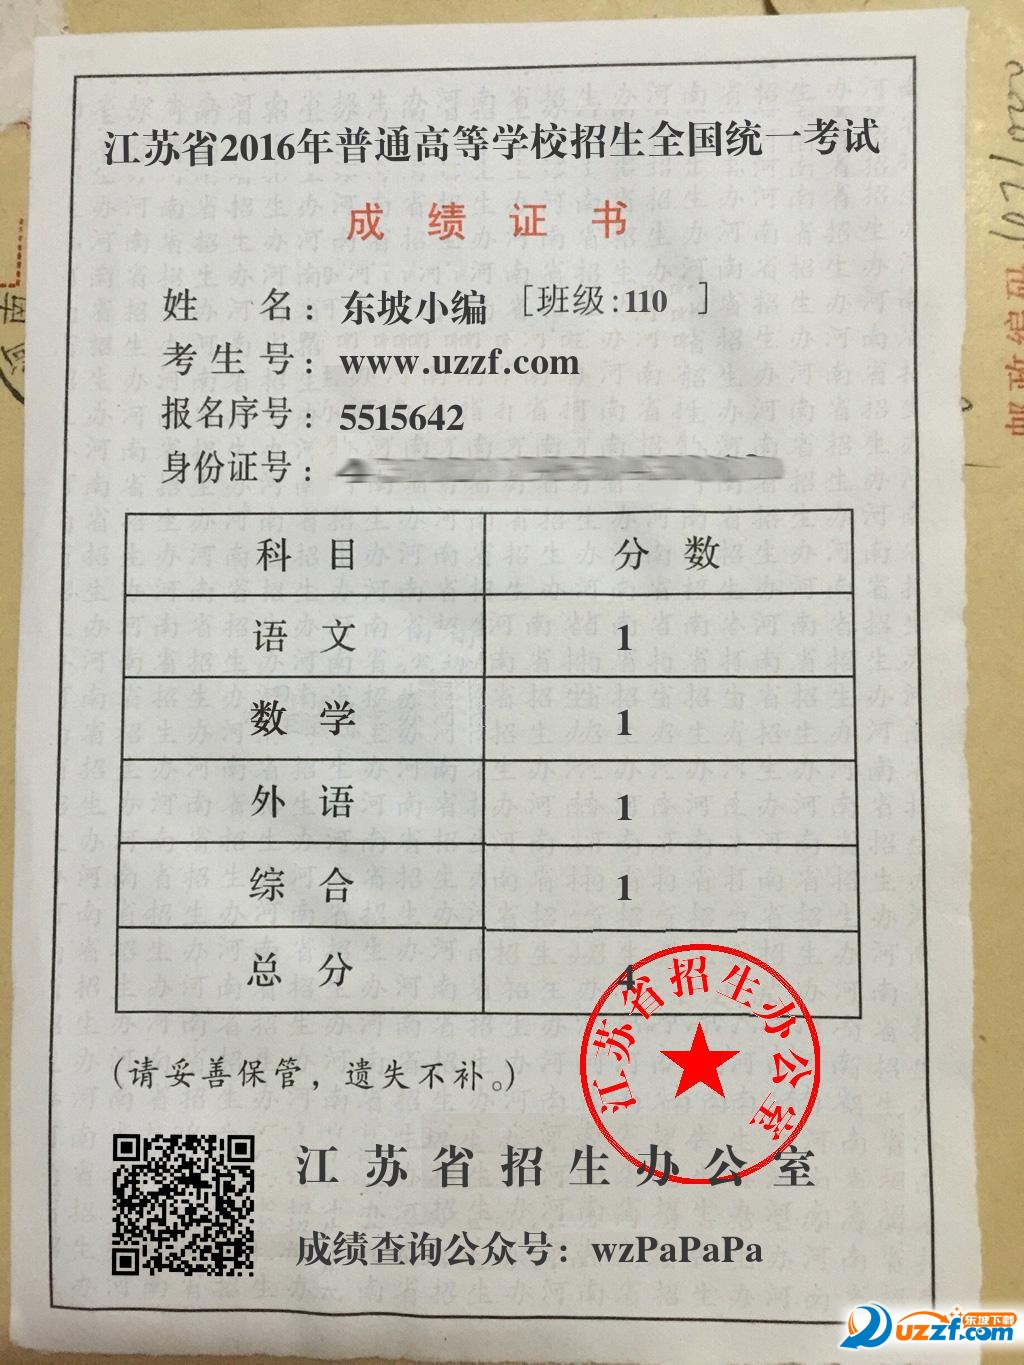 2016江苏高考成绩单图片制作软件|2016微信朋